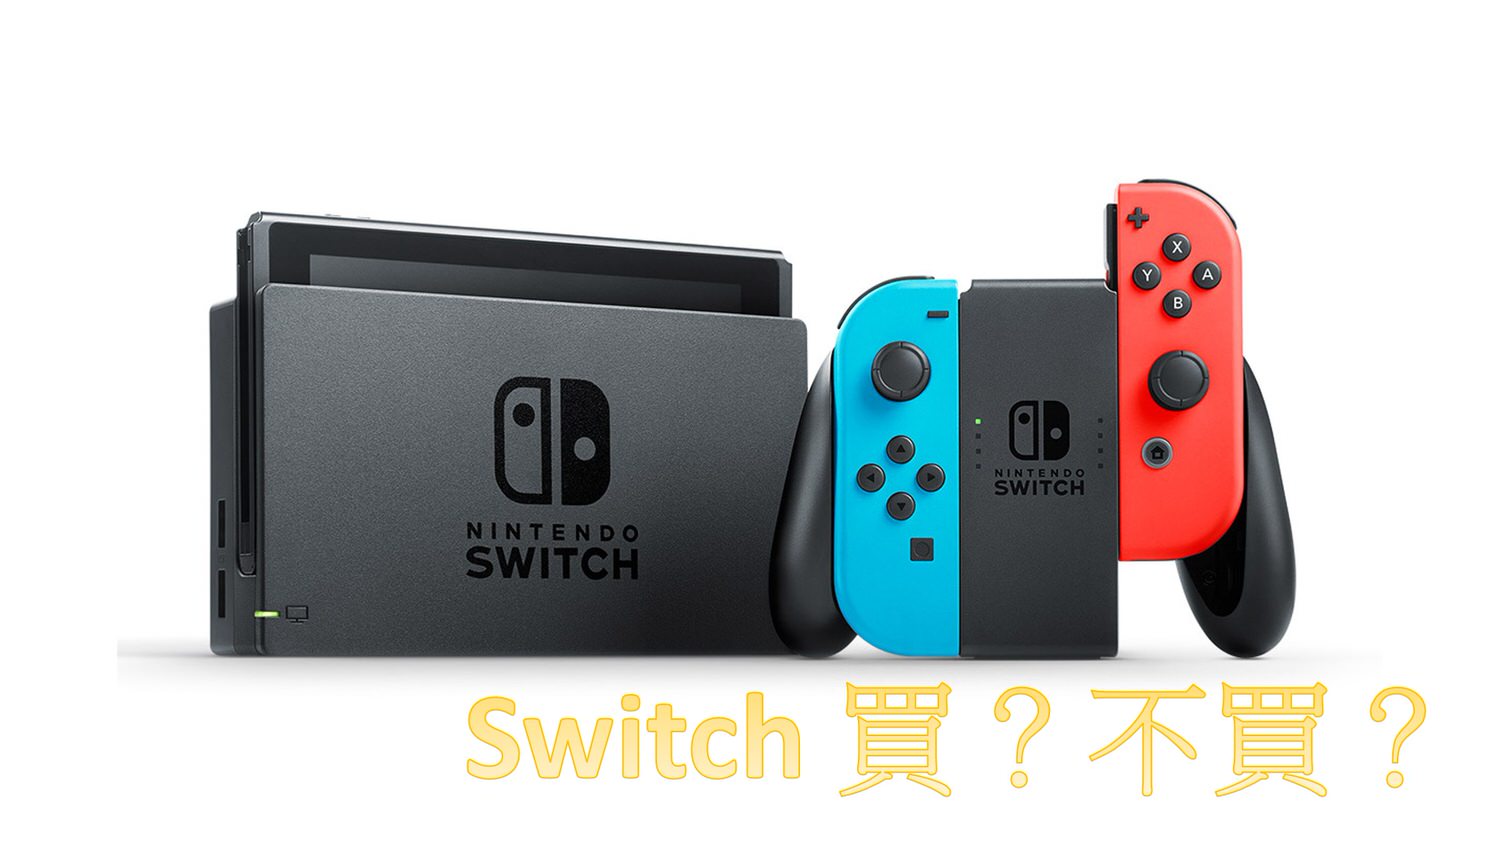 Switch 1